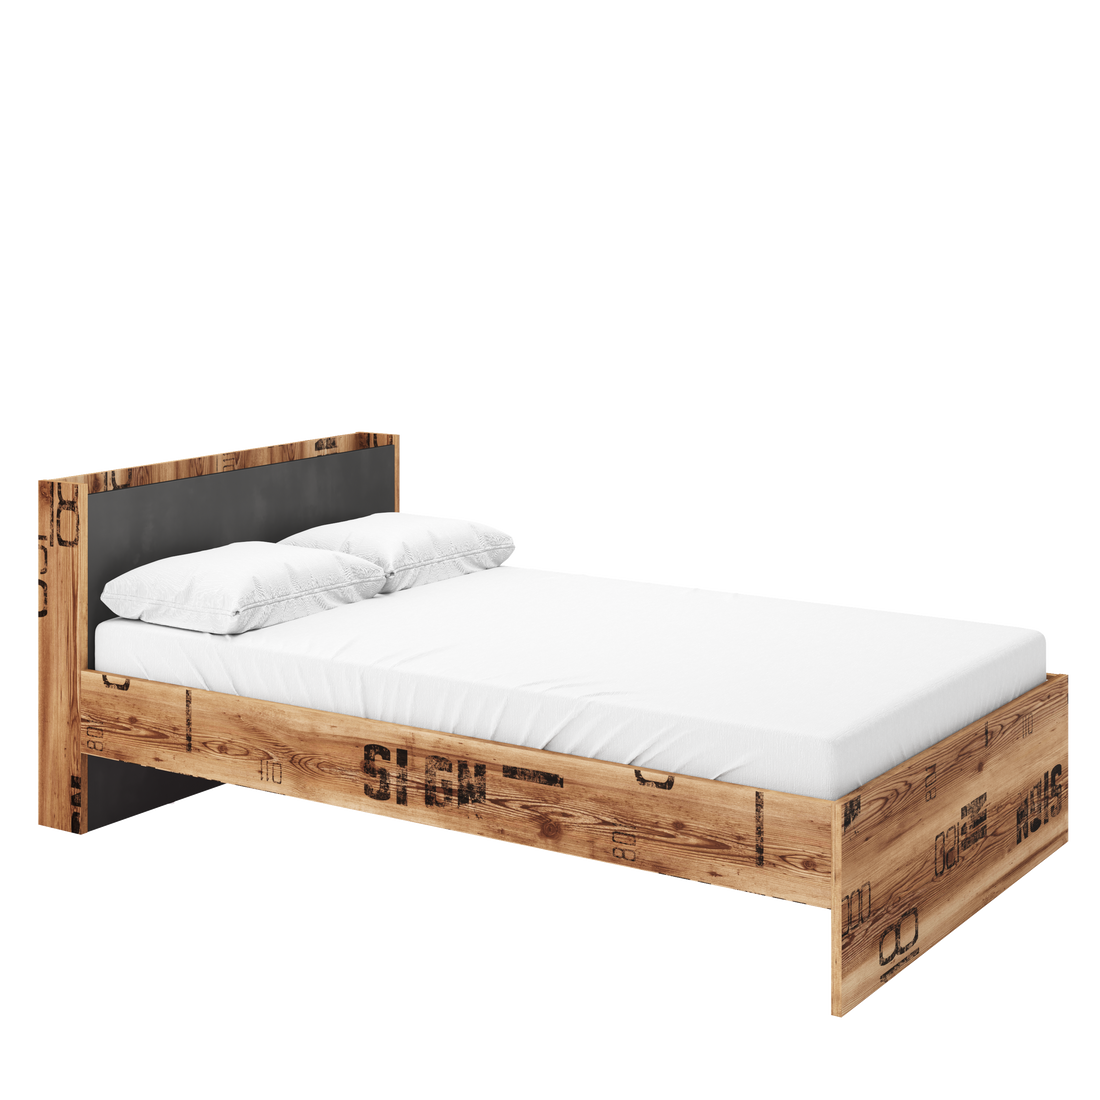 Fargo Bed 13 Width 90cm - £203.4 - Kids Single Bed 